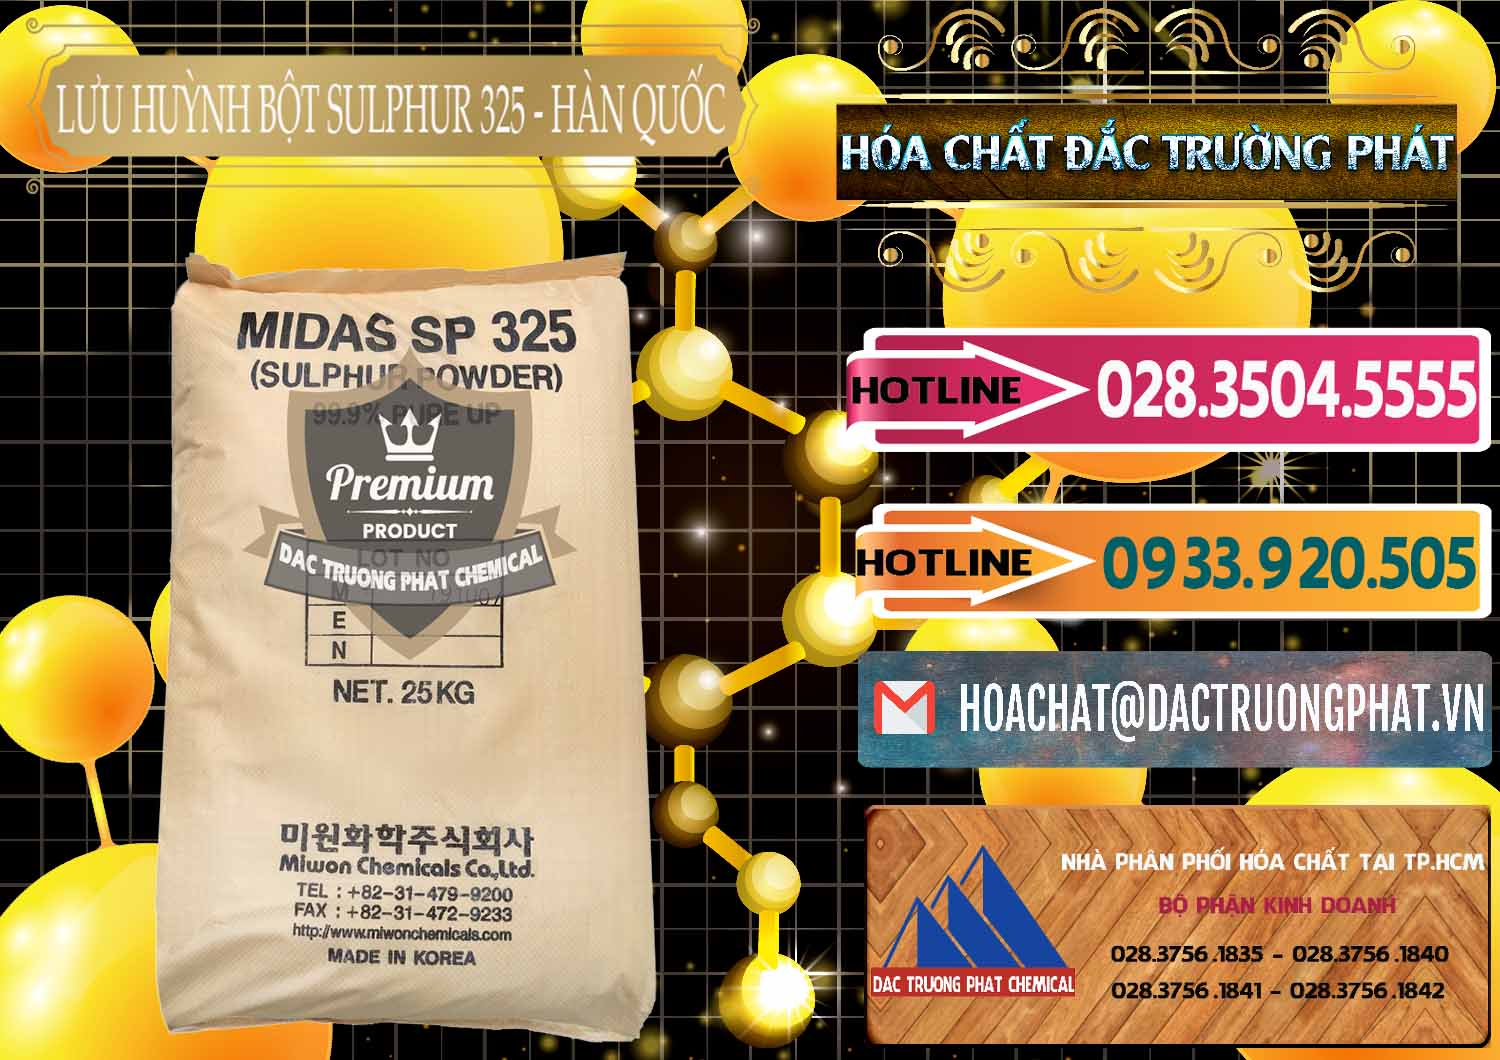 Chuyên bán _ cung cấp Lưu huỳnh Bột - Sulfur Powder Midas SP 325 Hàn Quốc Korea - 0198 - Nơi cung cấp và bán hóa chất tại TP.HCM - dactruongphat.vn